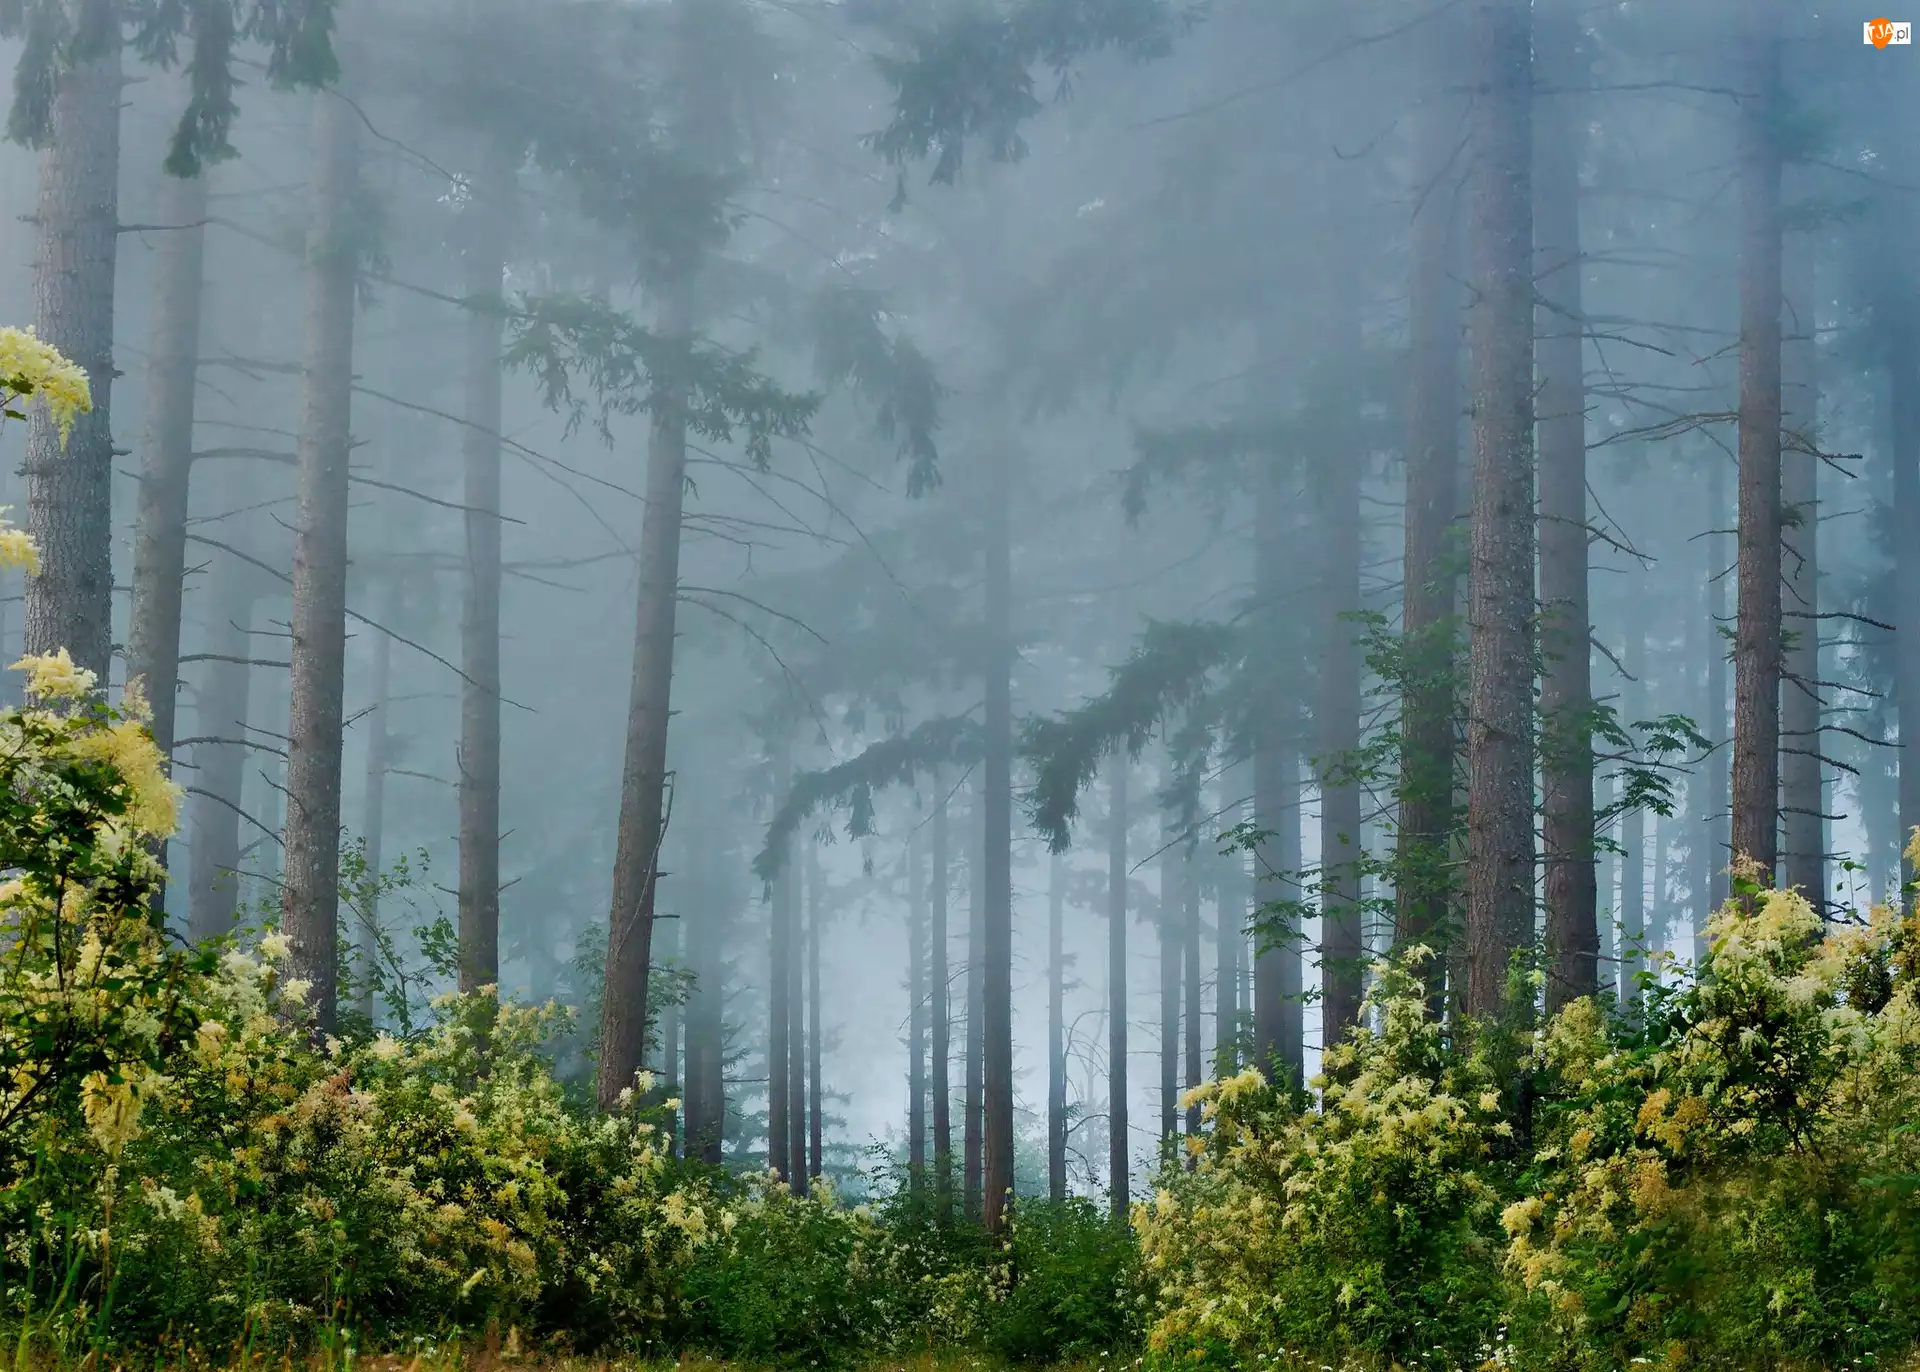 Las, Mgła